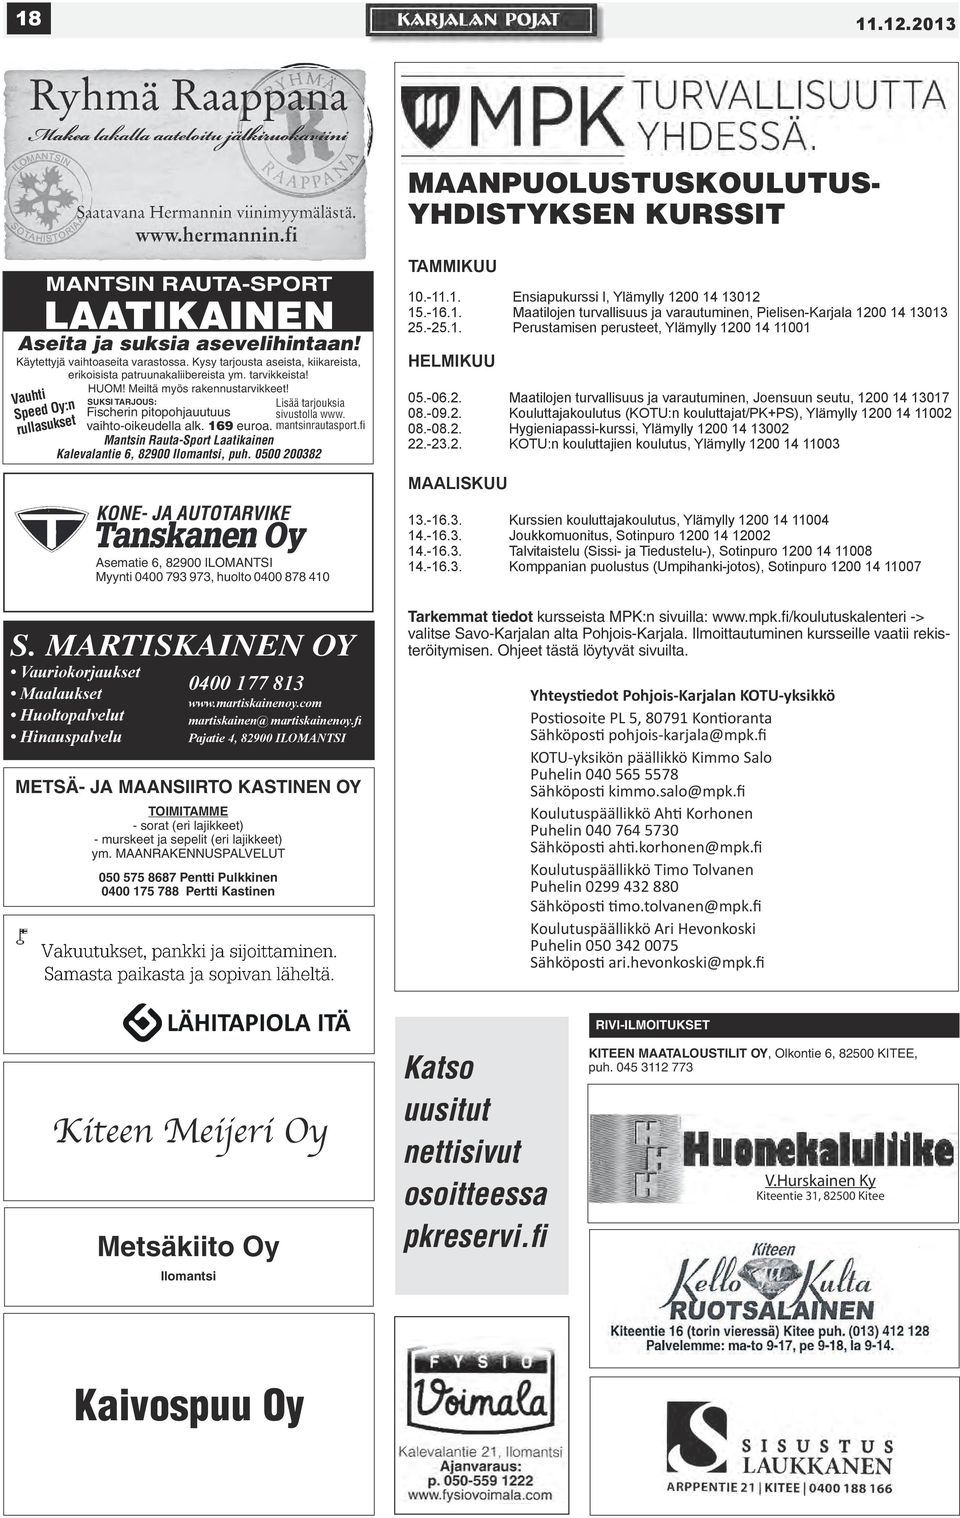 2010 Page 1 SUKSI TARJOUS: Lisää tarjouksia Fischerin pitopohjauutuus sivustolla www. vaihto-oikeudella alk. 169 euroa. mantsinrautasport.